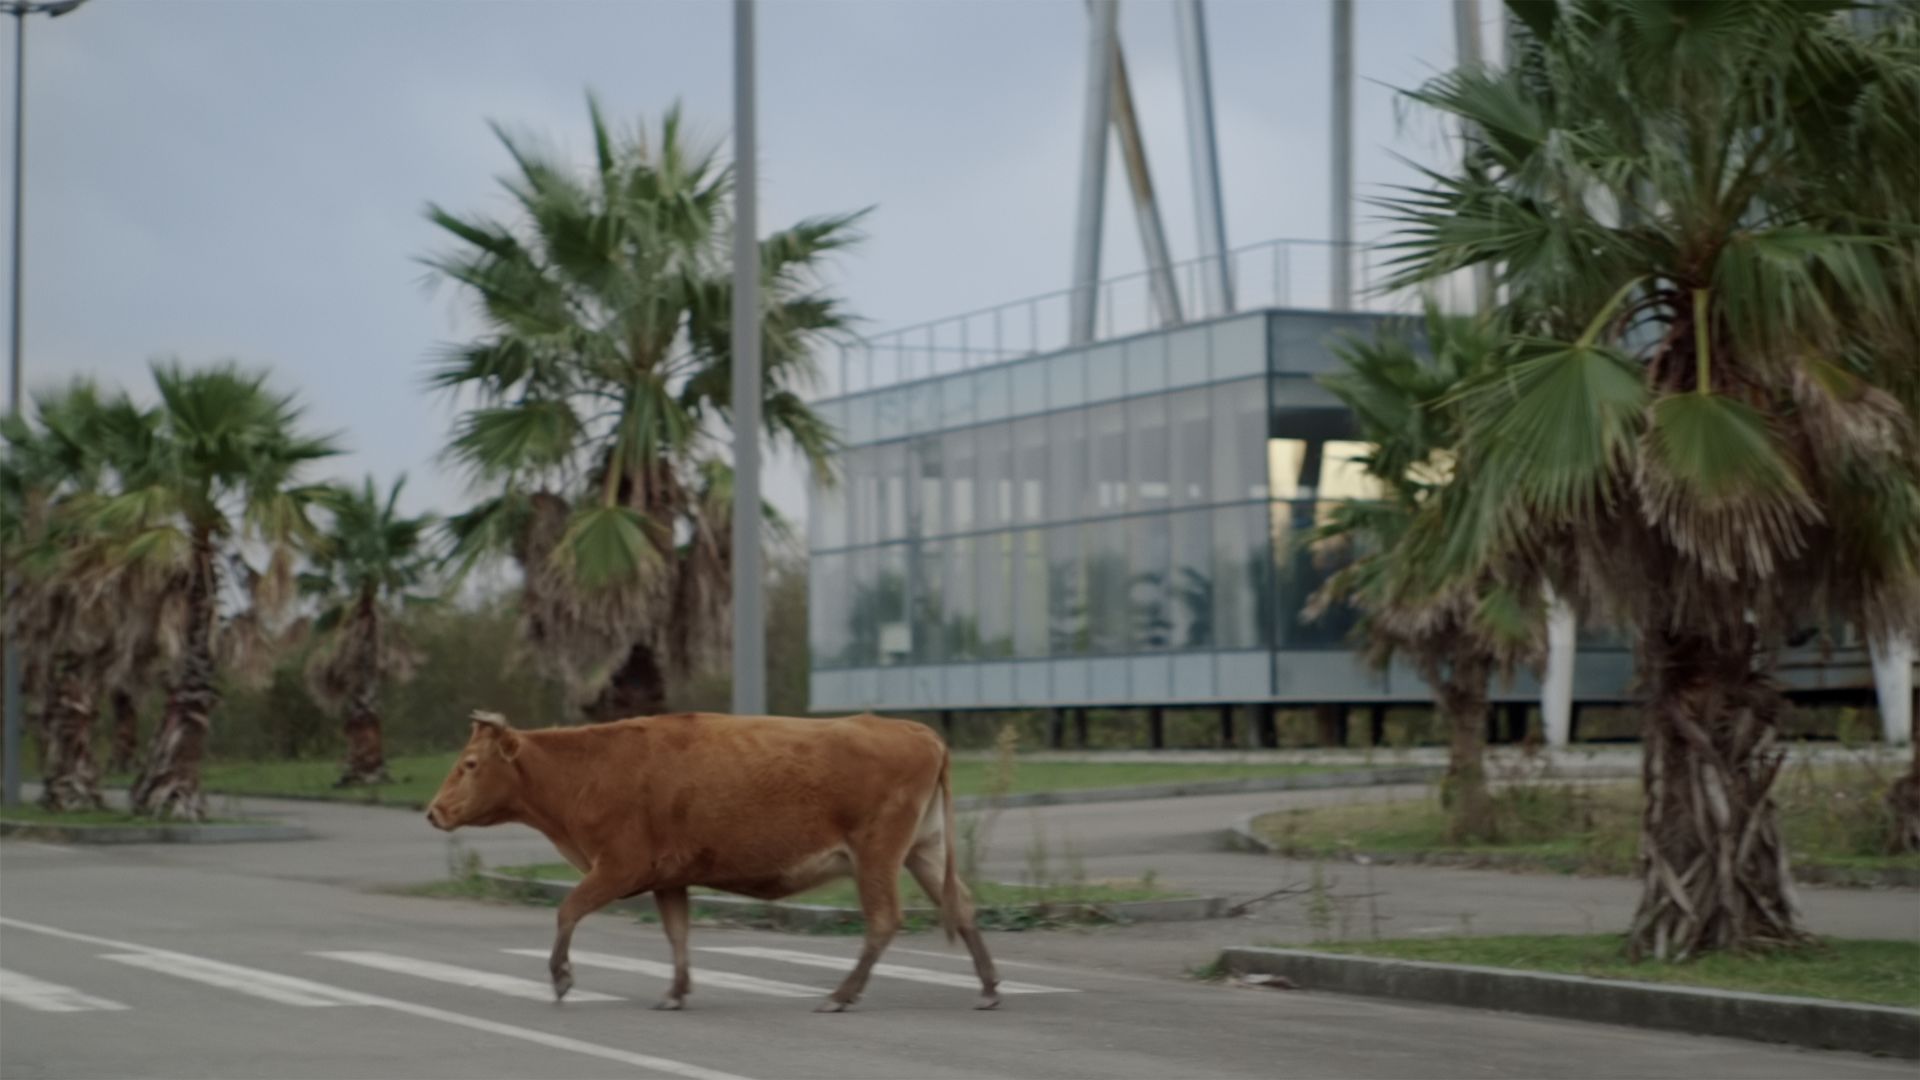 Filmstill: Eine braune Kuh läuft über eine Straße. Im Hintergrund sind Palmen zu sehen, die ein futuristisches Gebäude rahmen.